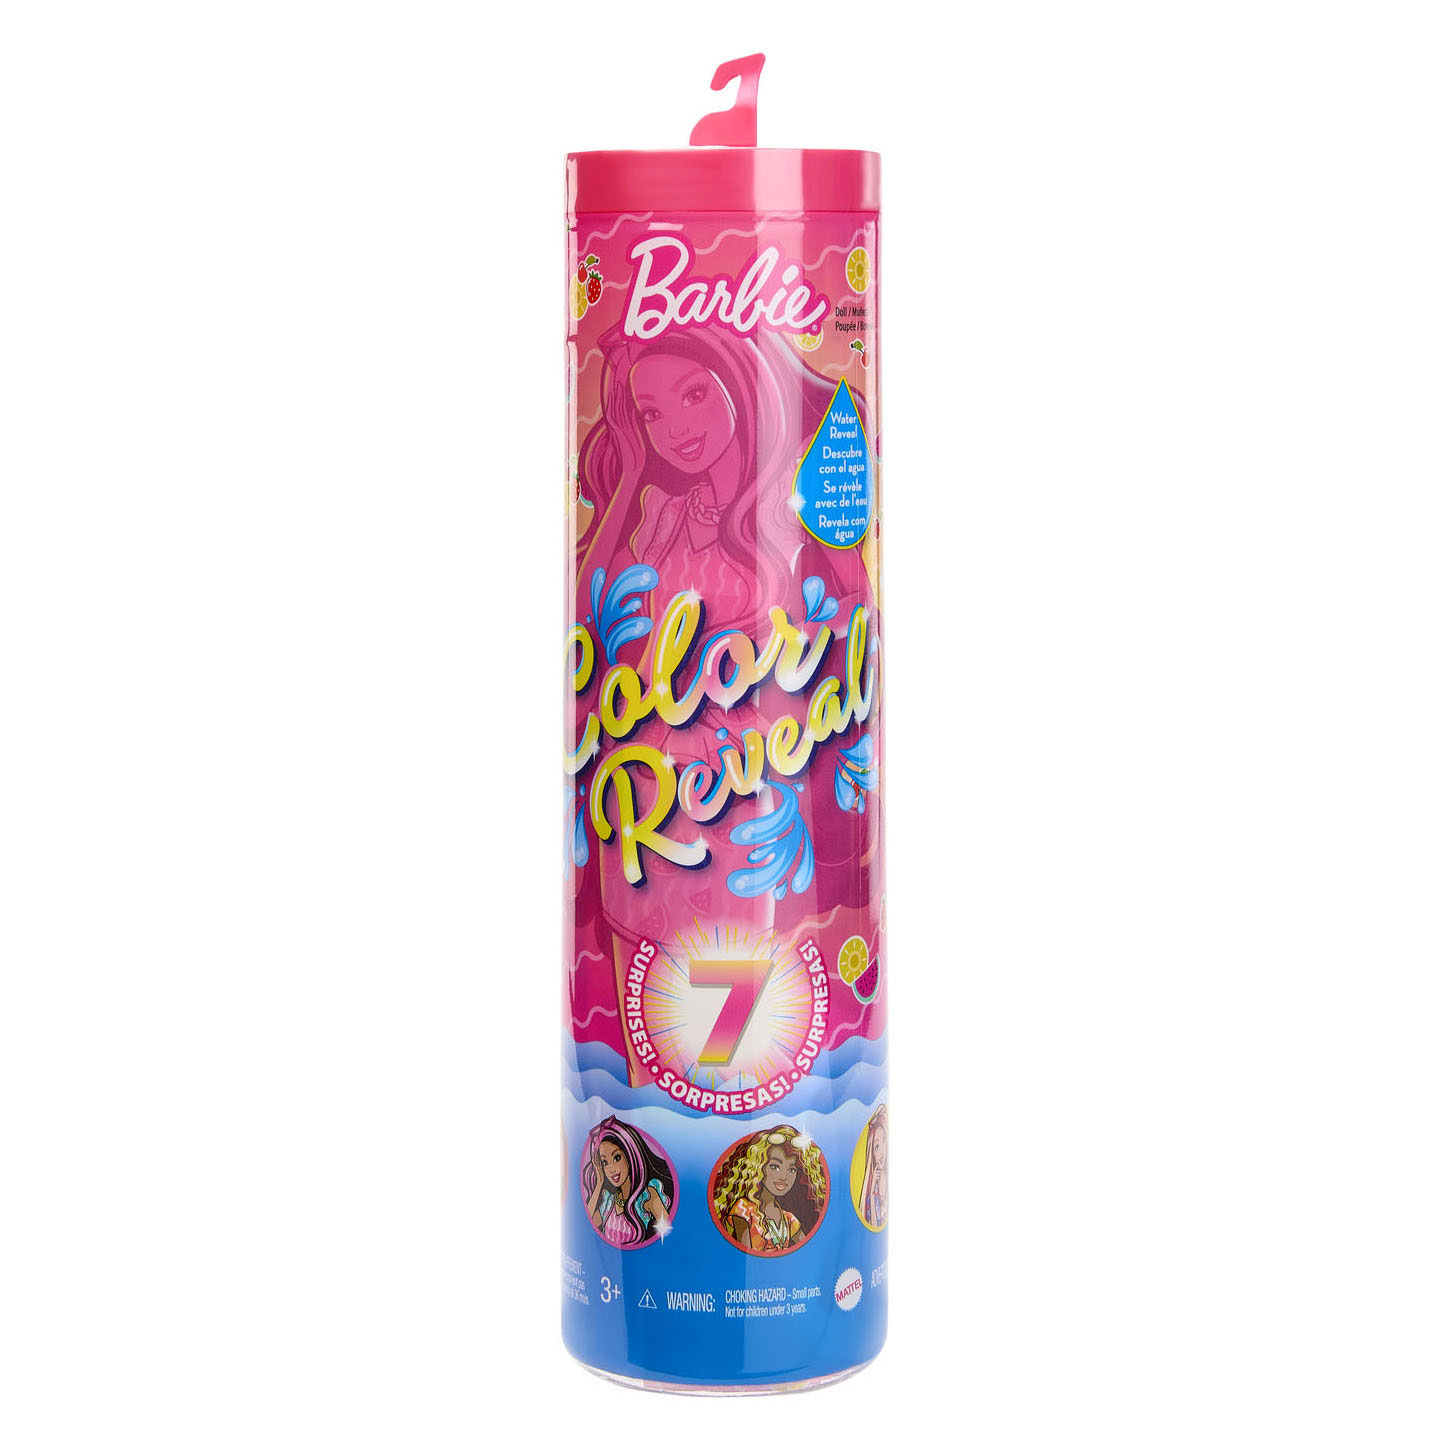 Barbie Pop Reveal Fruit Series Doll - HNW41